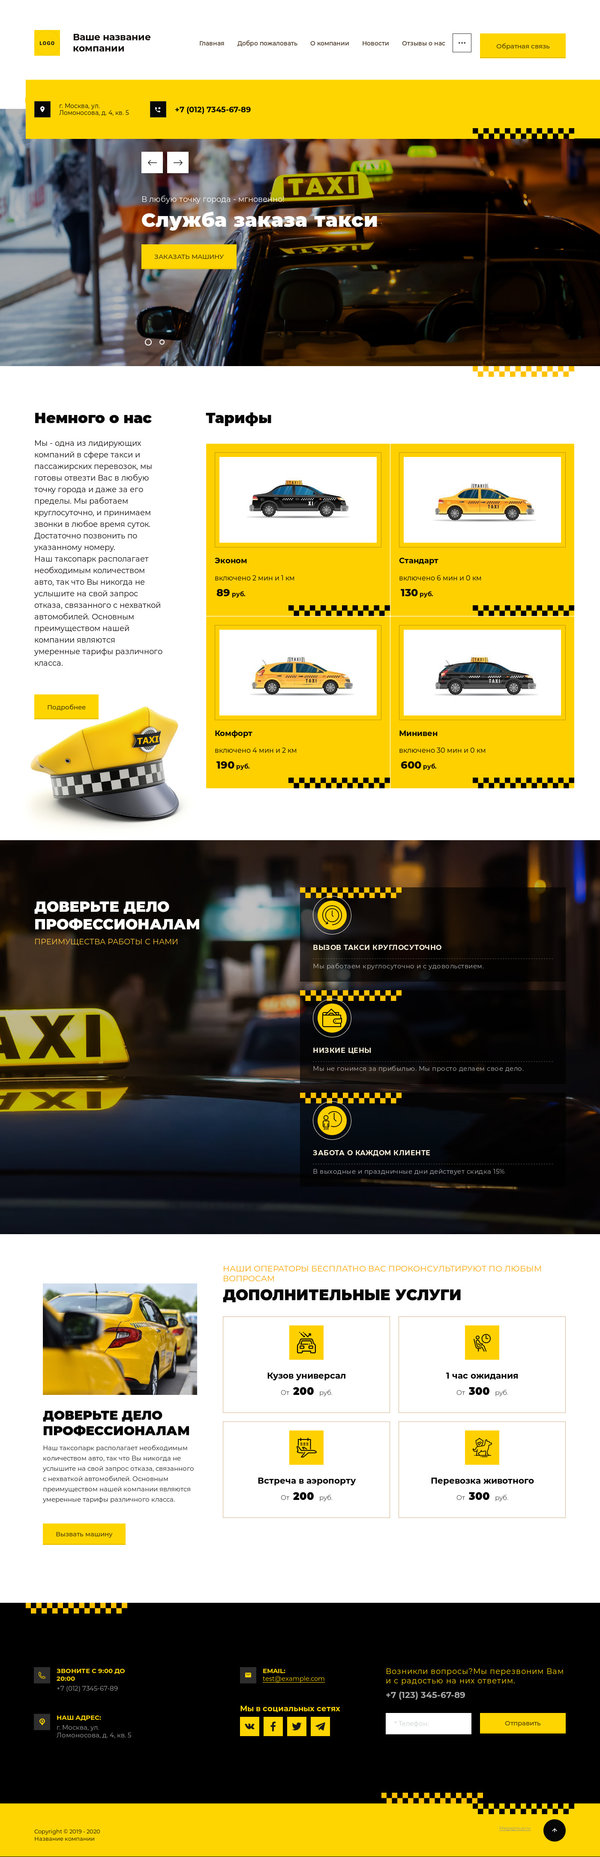 Готовый Сайт-Бизнес № 2524728 - Такси, пассажирские перевозки (Десктопная версия)